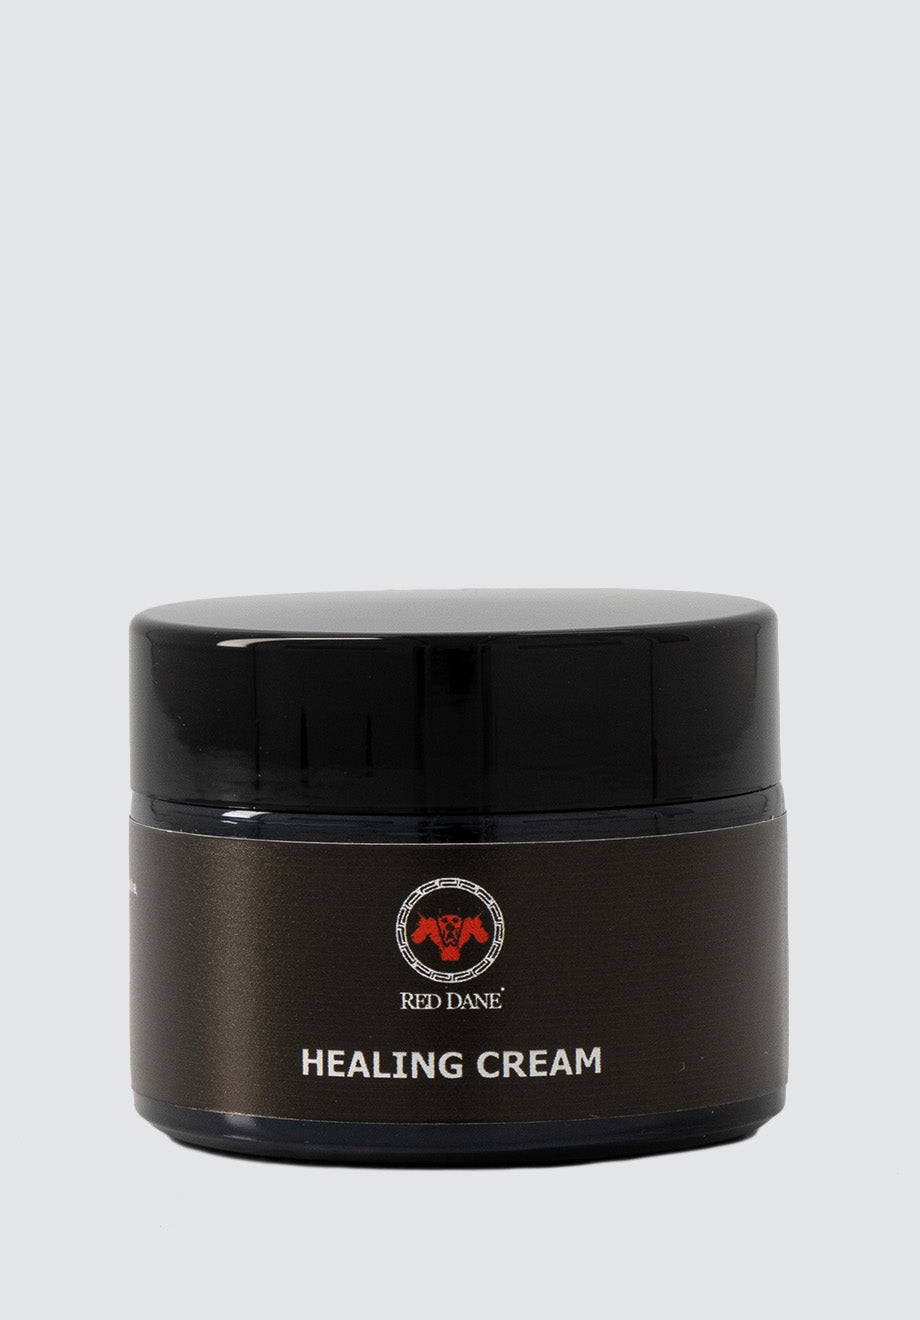 Healing Cream